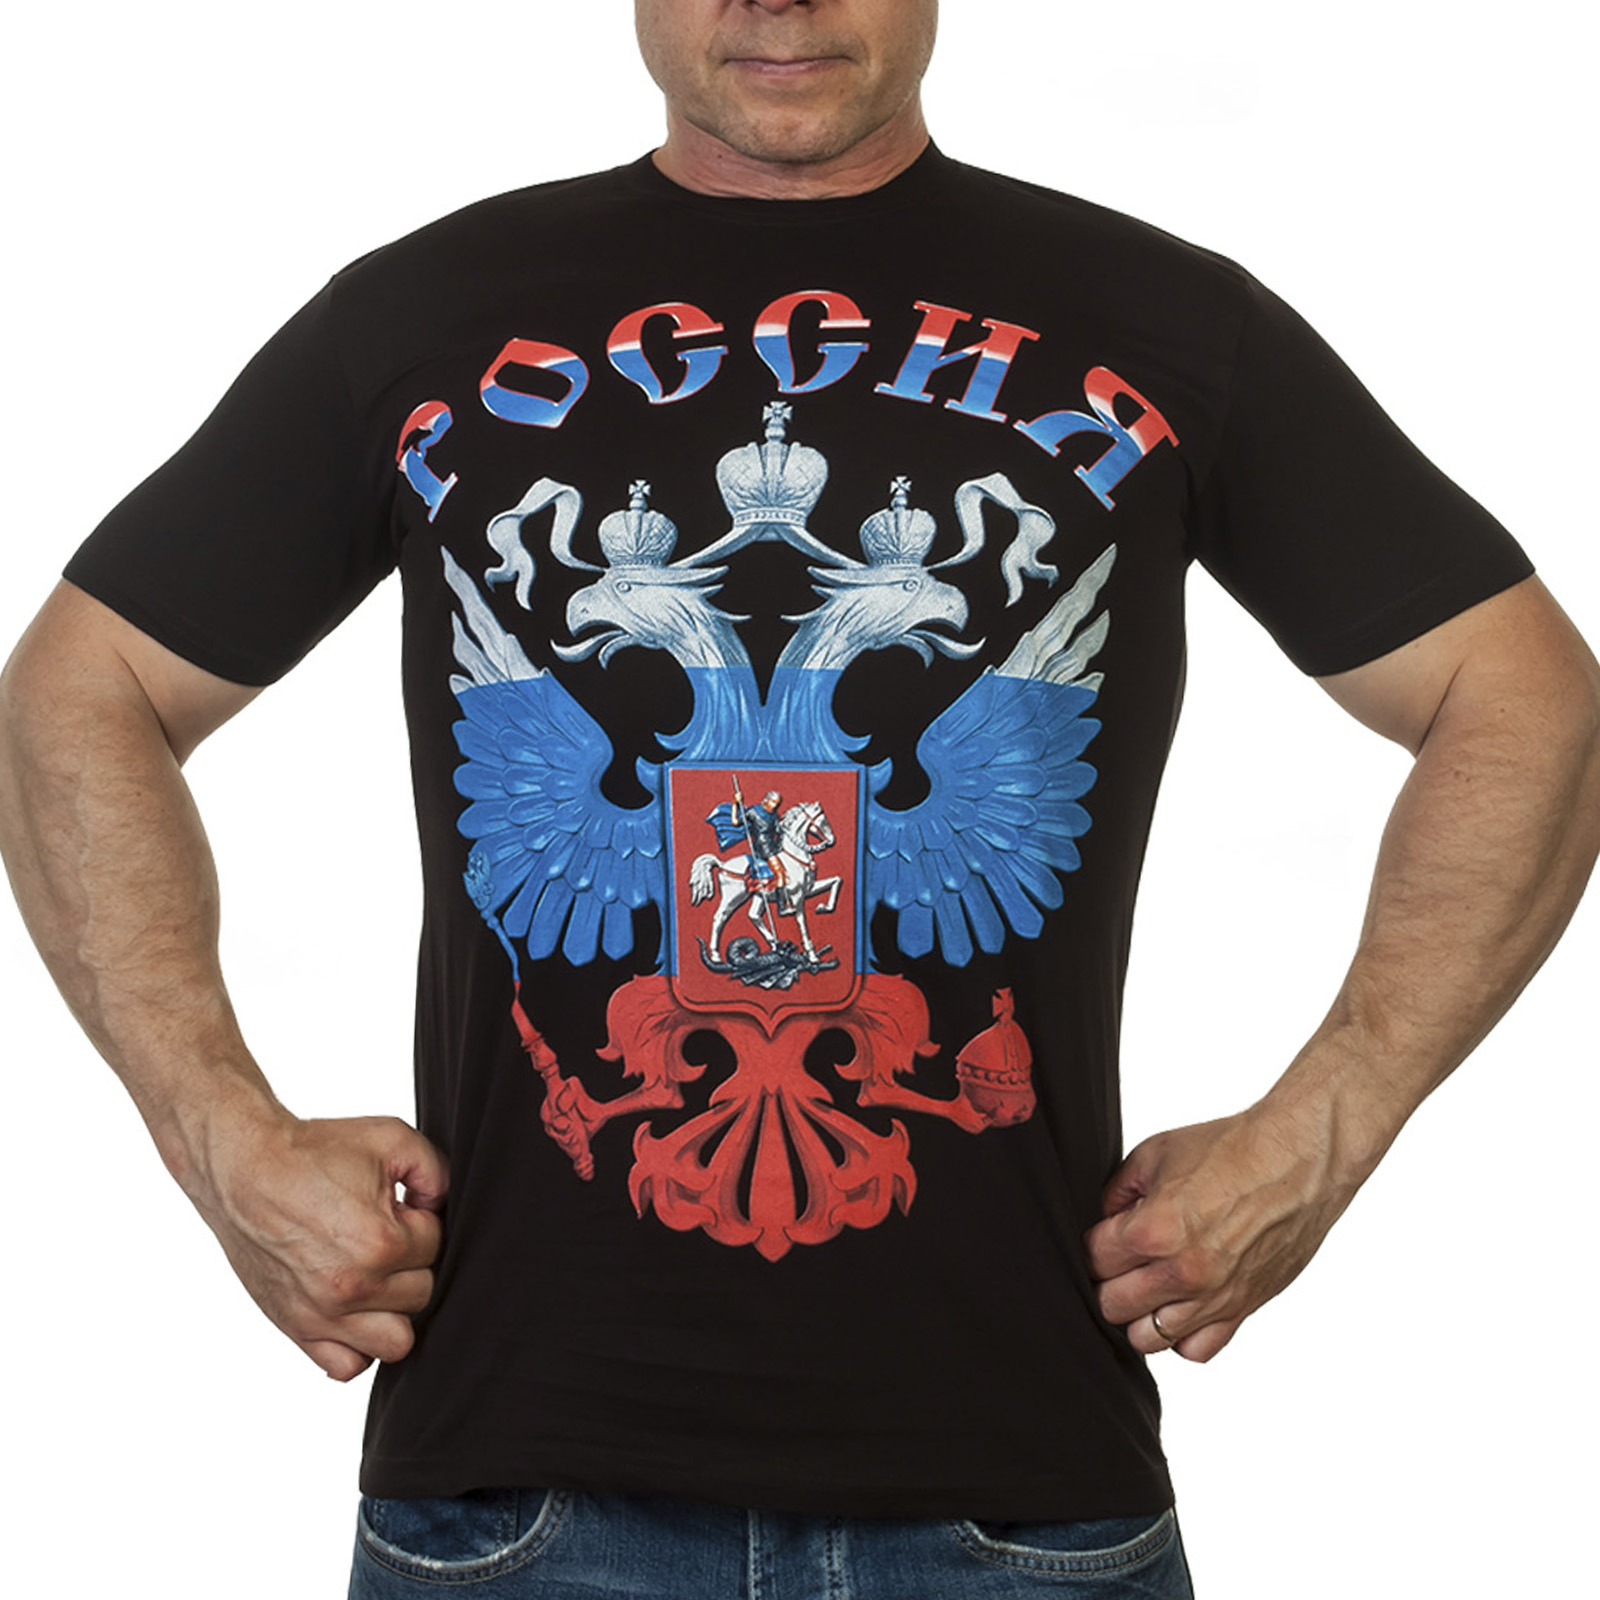 Недорого купить футболку с гербом России в военторге Военпро